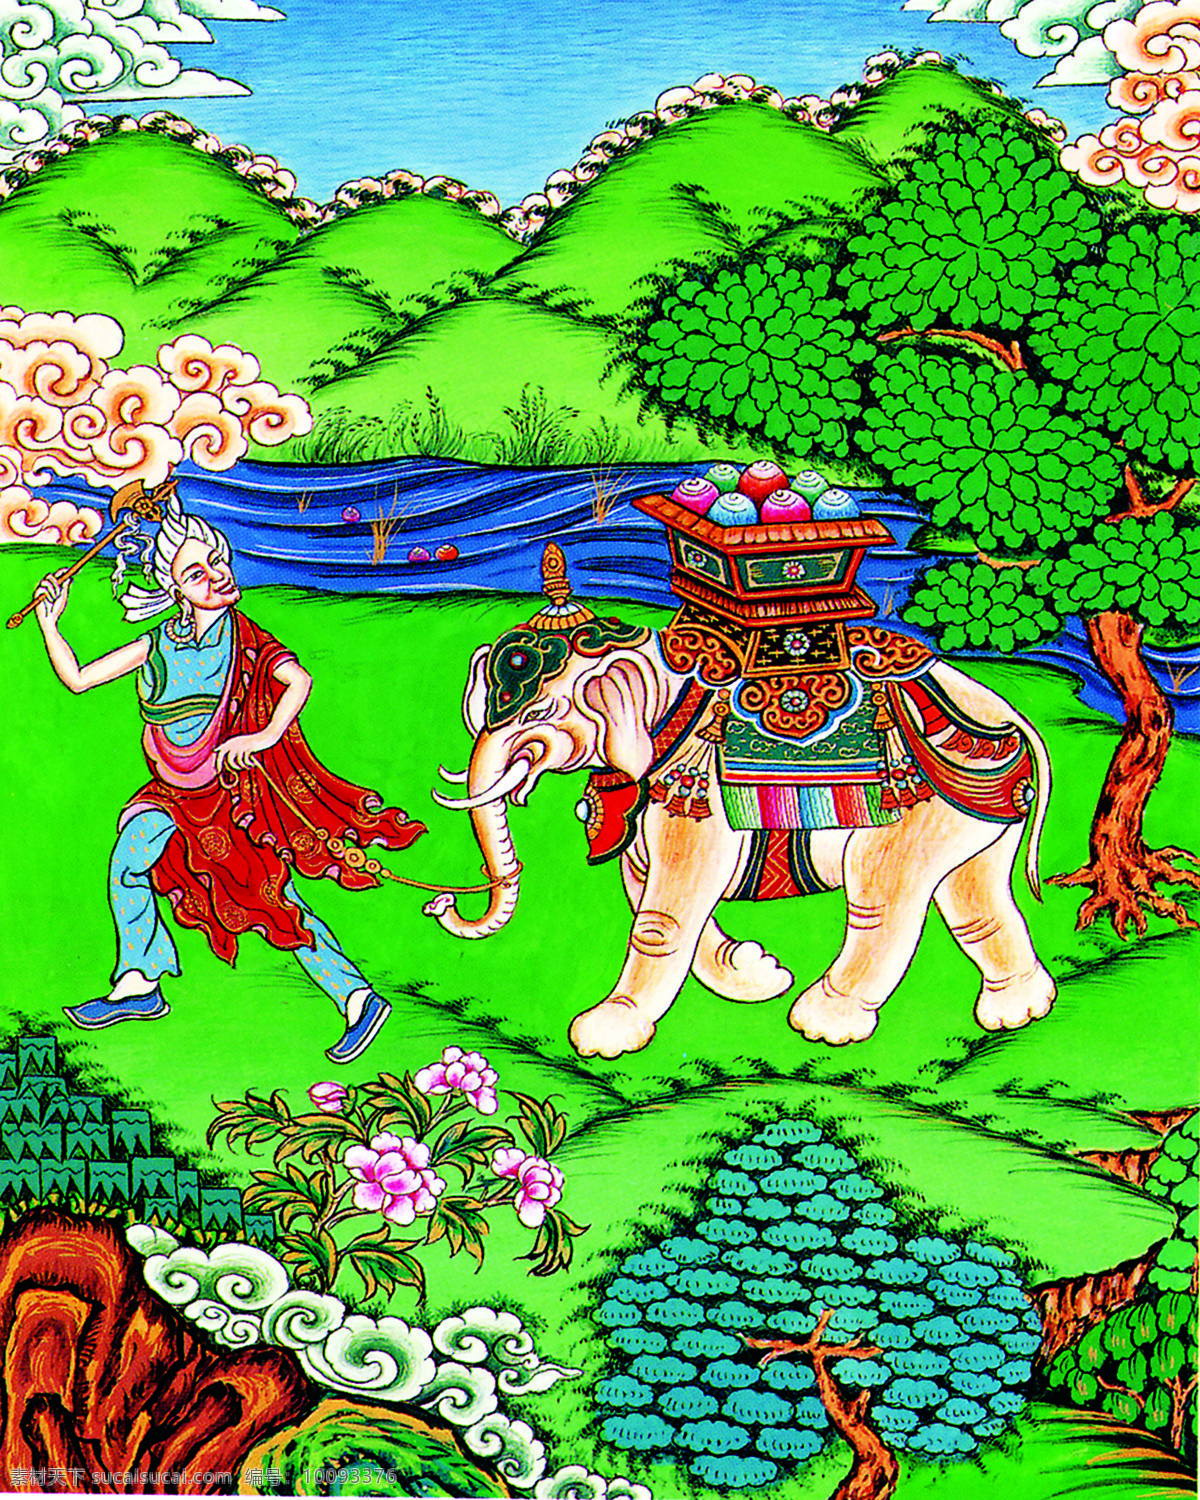 藏族 大象 绘画书法 吉祥图 唐卡 图腾 文化艺术 吉祥 图 设计素材 模板下载 藏族吉祥图 绘画作品